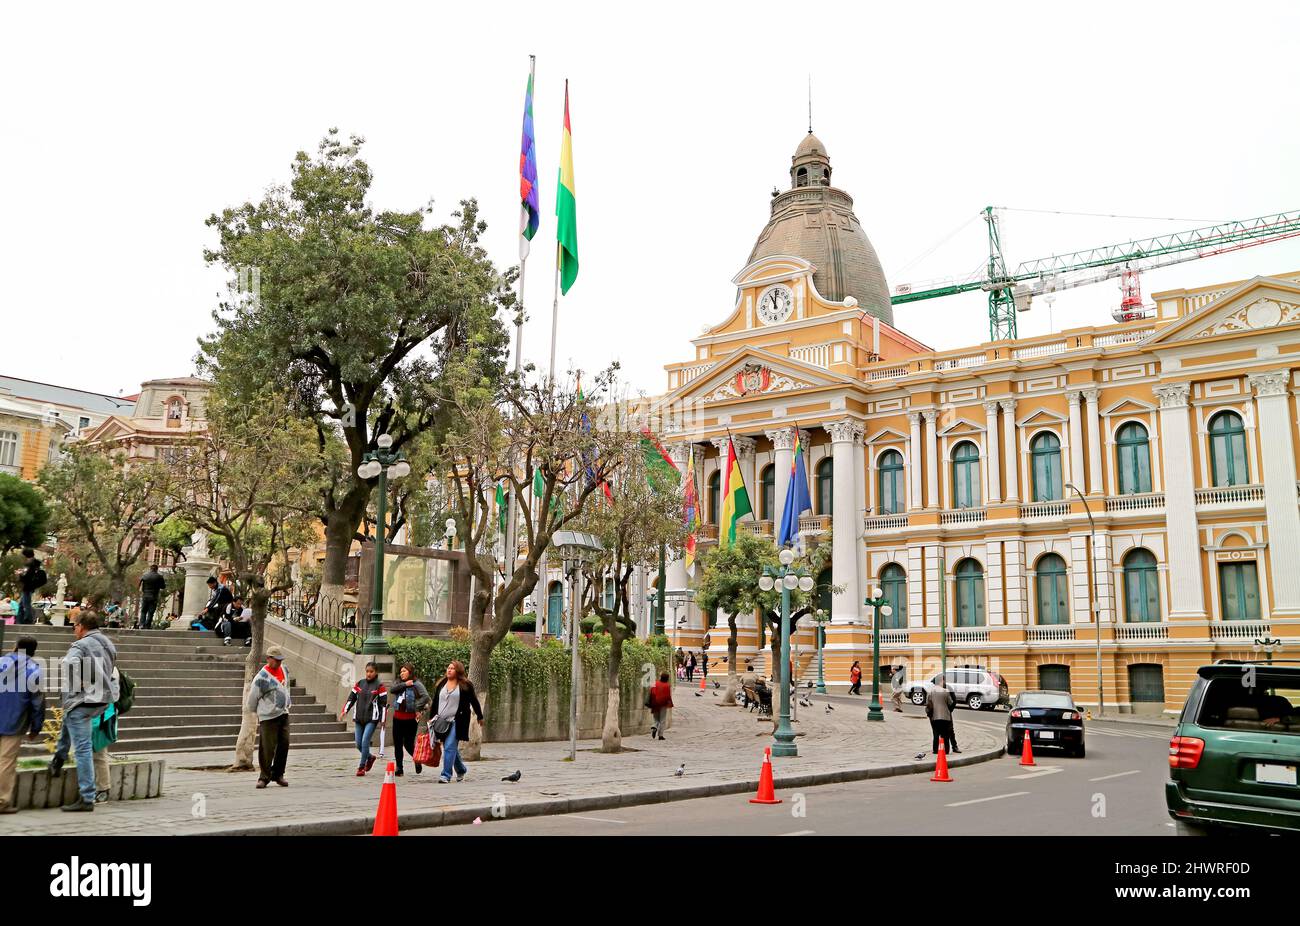 Beeindruckender bolivianischer Regierungspalast oder Palacio Quemado mit der Uhr läuft gegen den Uhrzeigersinn an der Fassade, Plaza Murillo Square, La Paz, Bolivien Stockfoto